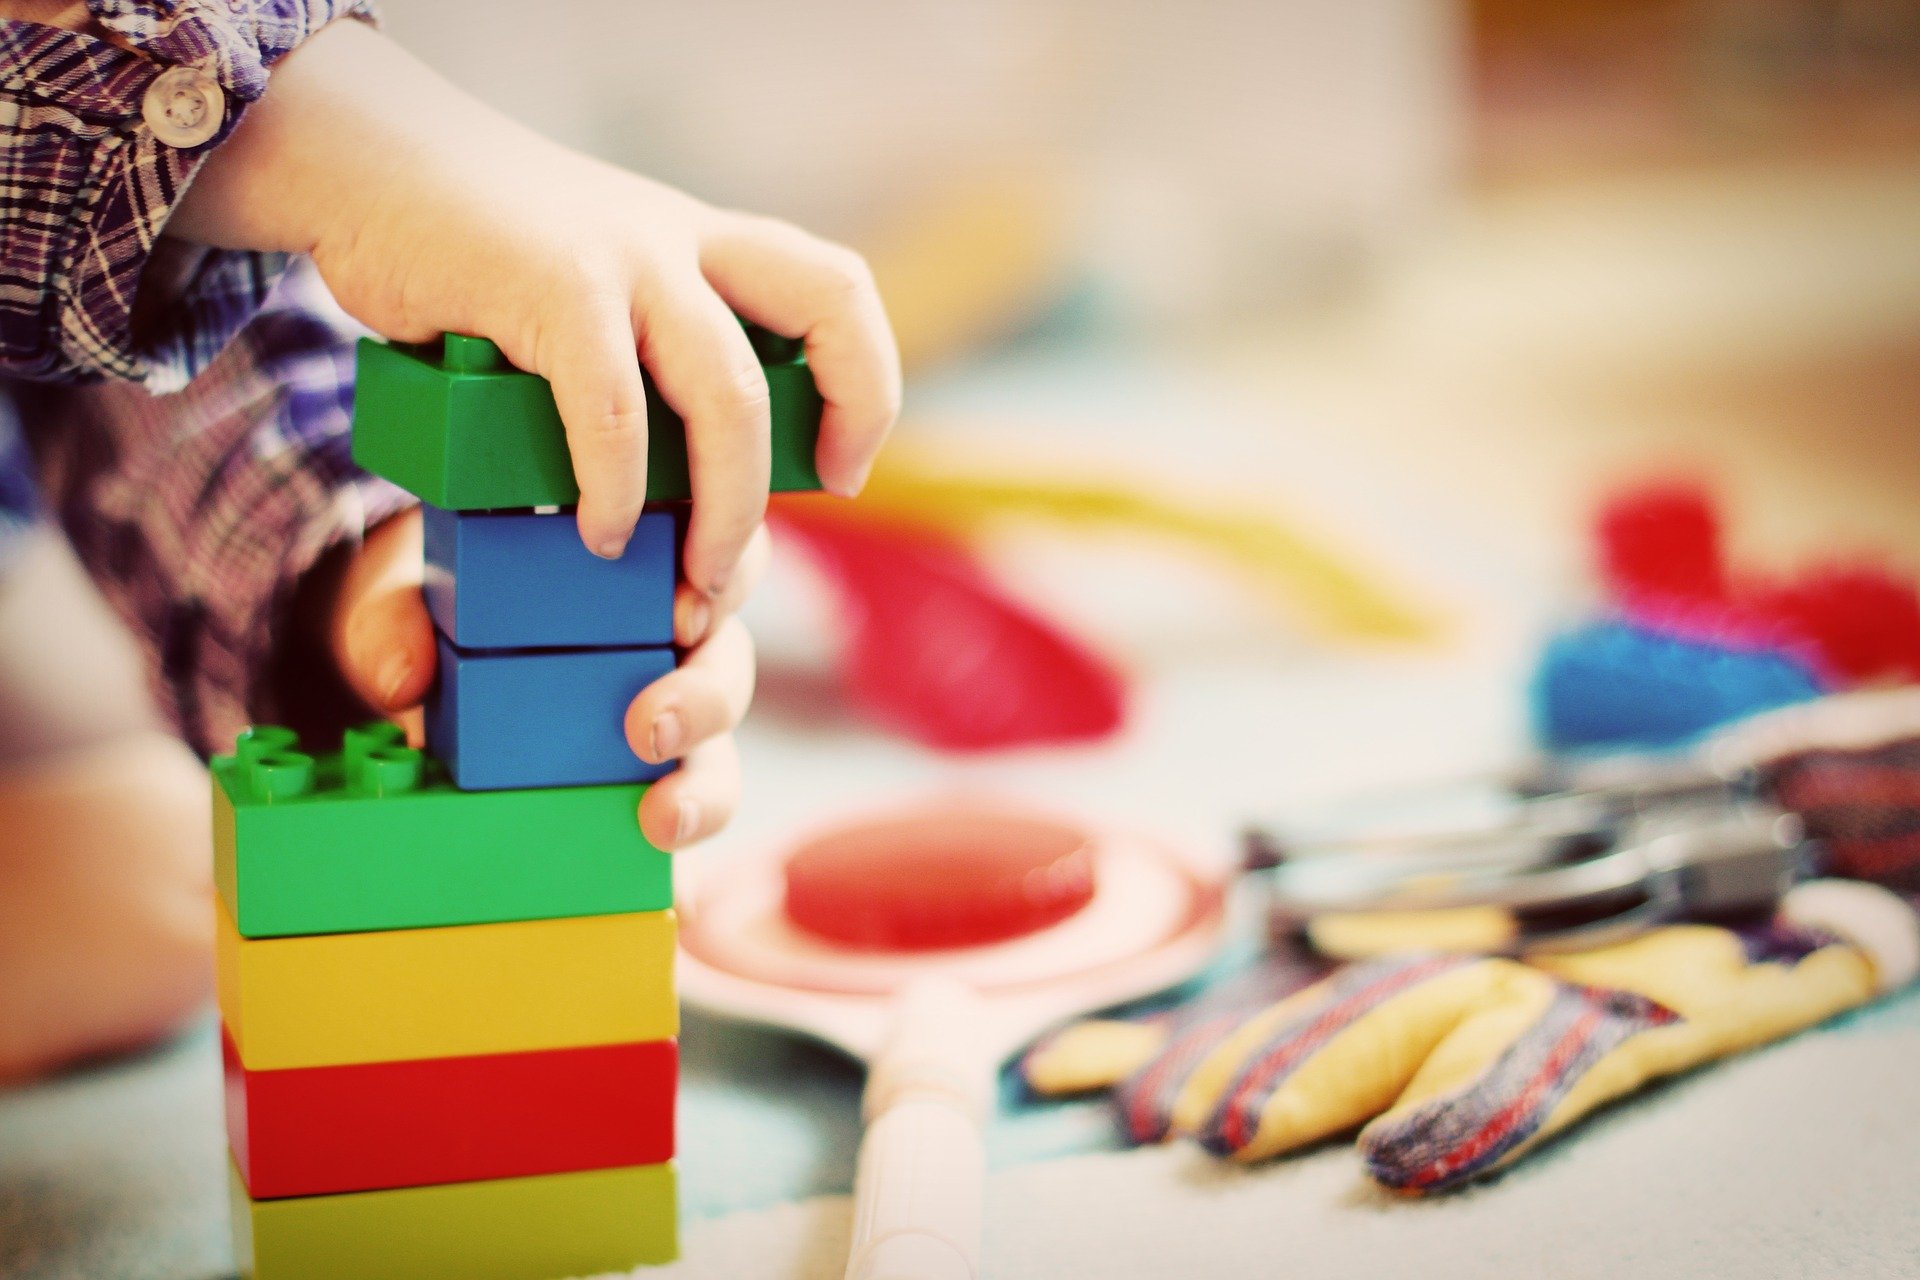 Lapsen kädet, lego-palikoista tehty torni ja leluja.